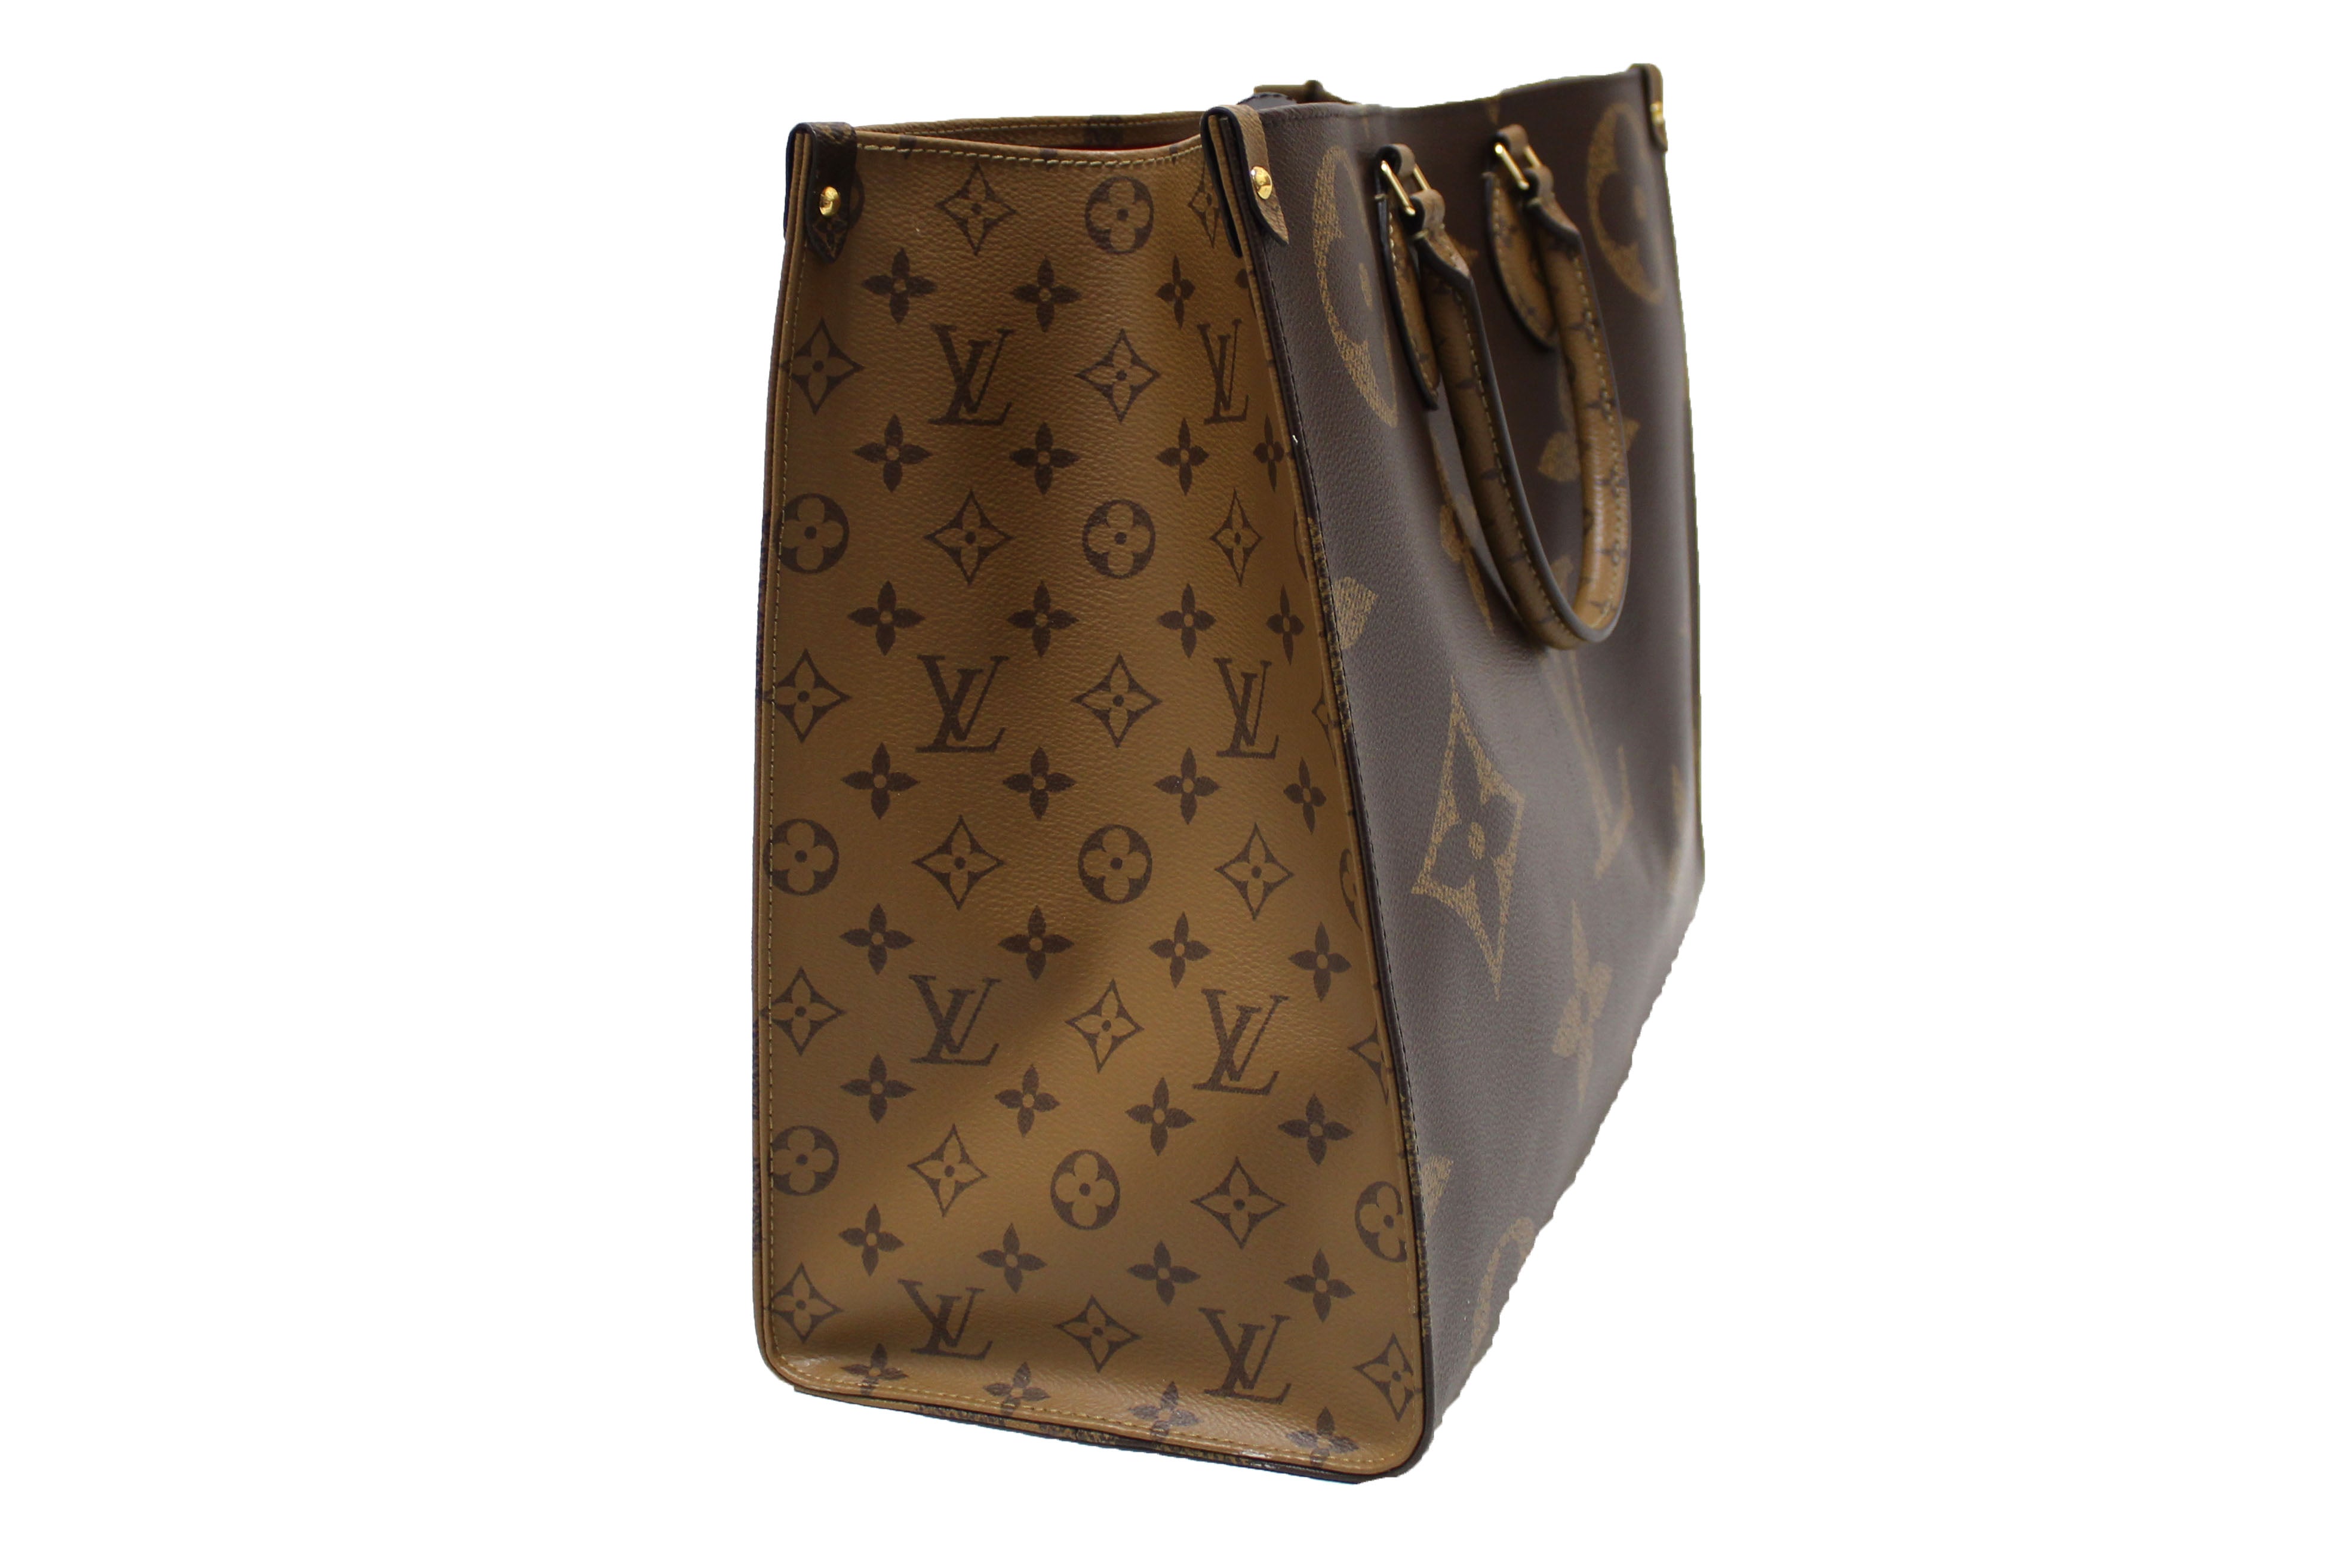 Louis Vuitton, Bags, 4 Authentic Large Louis Vuitton Shopping Bags